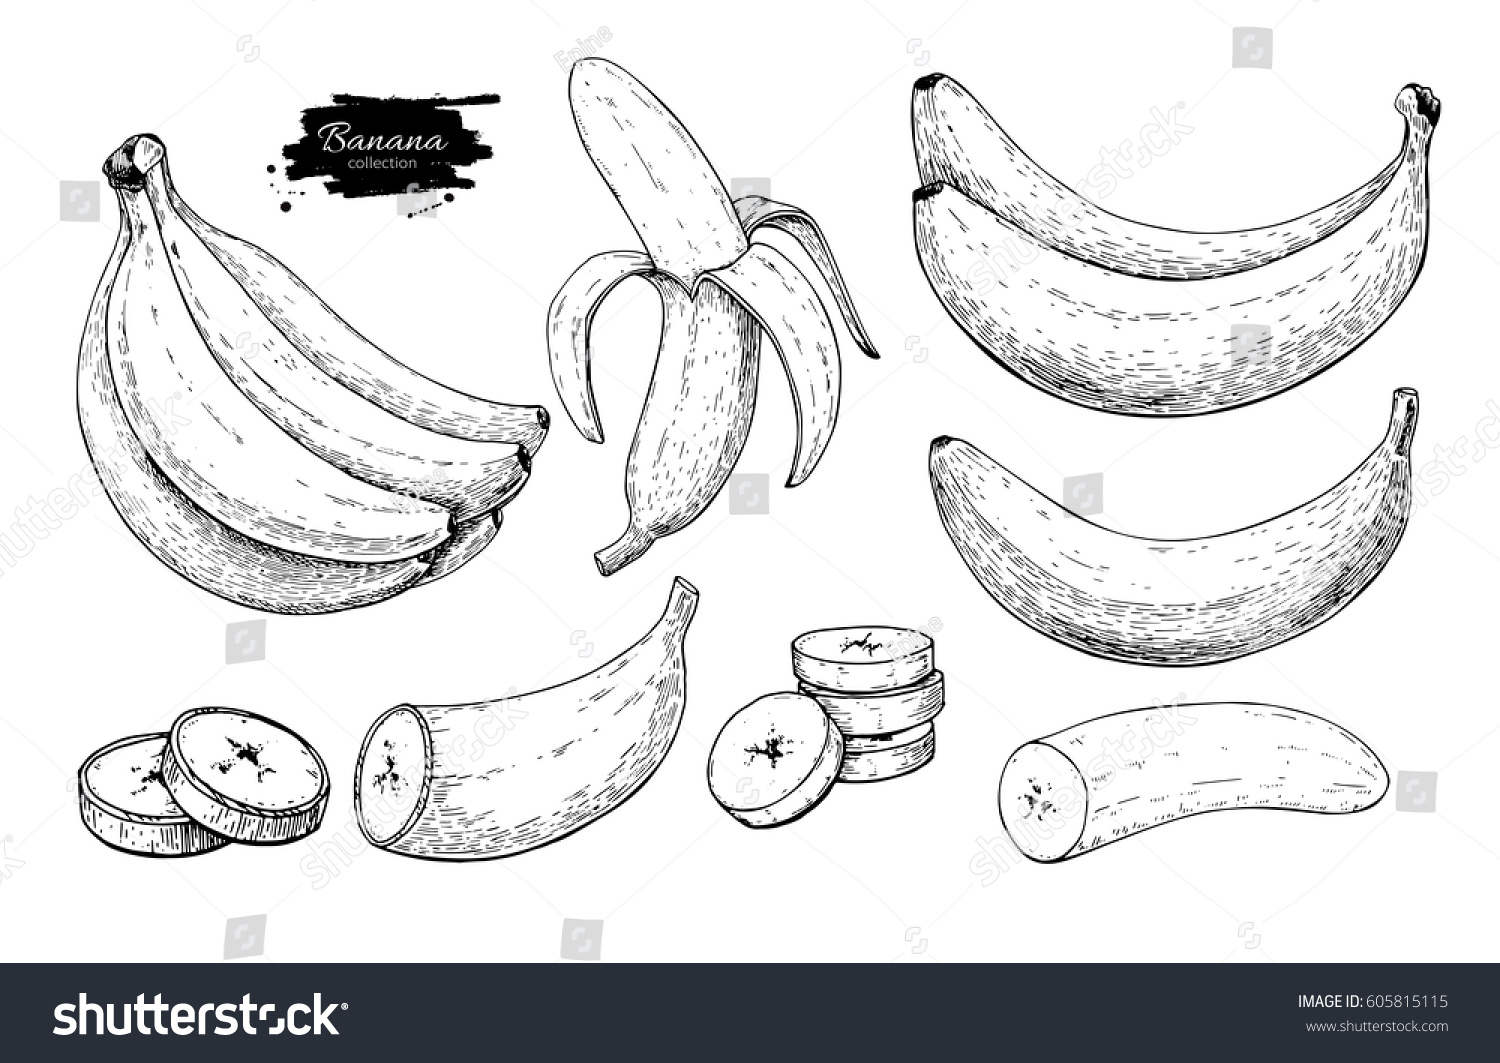 Нарисованный банан в разрезе